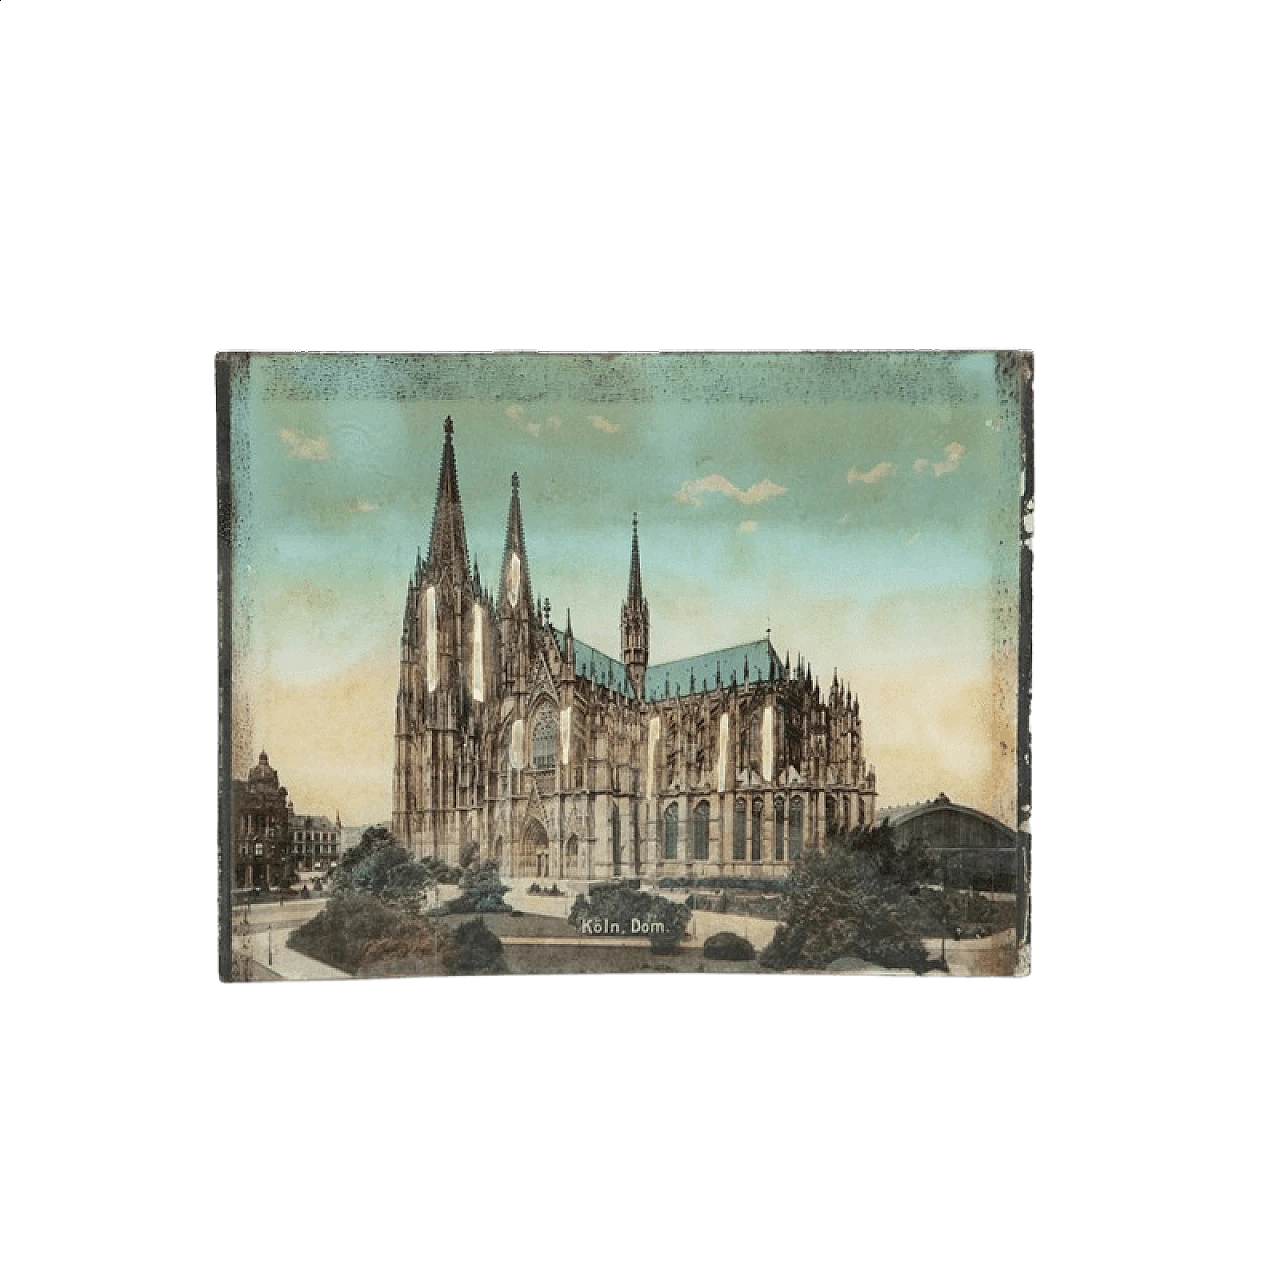 Stampa di veduta di cattedrale su vetro bombato con inserti in madreperla, '800 1470148